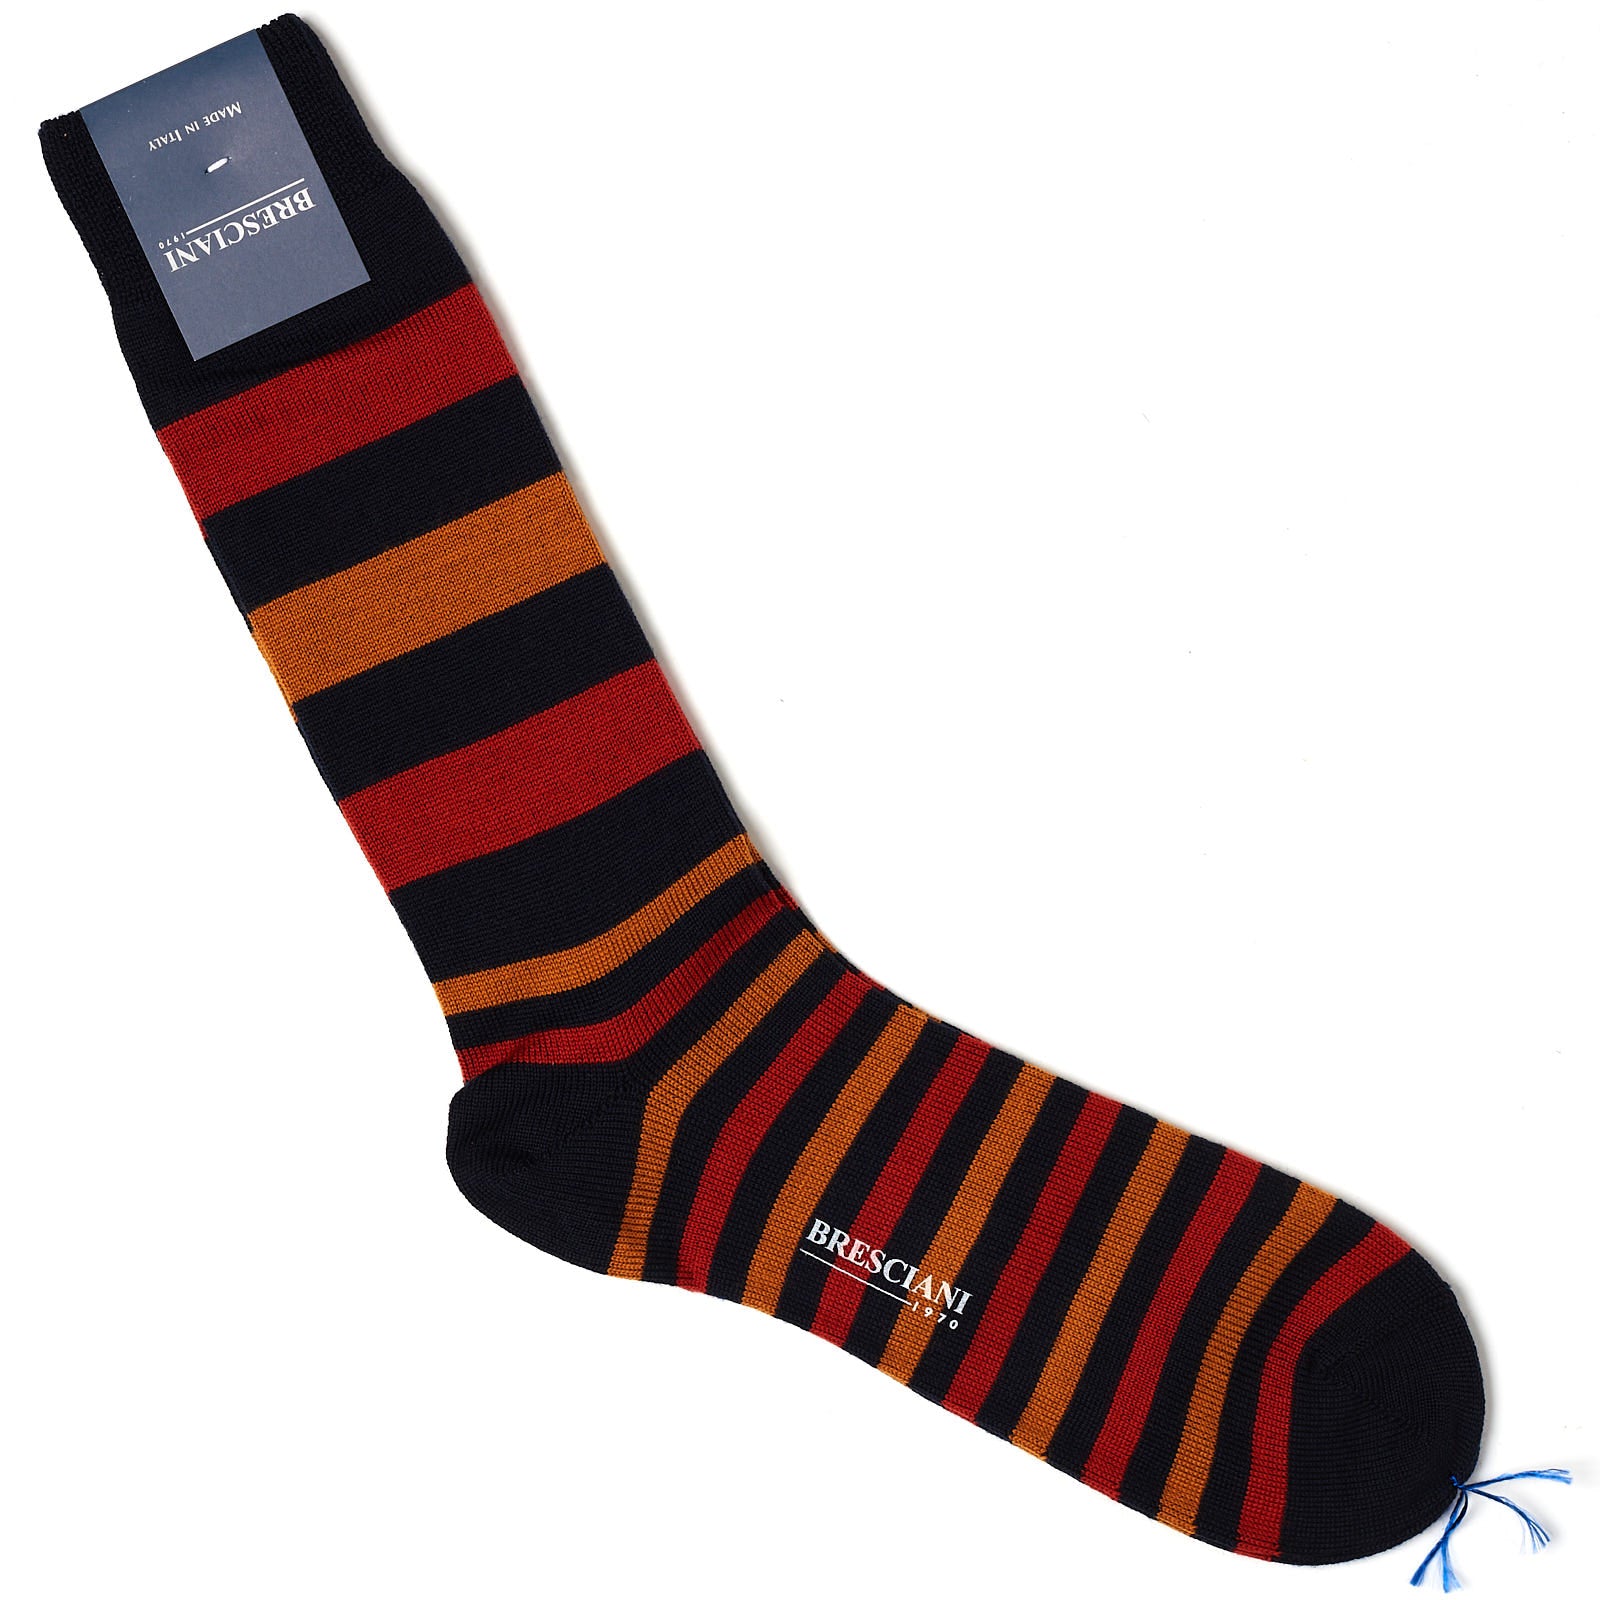 BRESCIANI Wool Balanced Striped Mid Calf Length Socks M-L